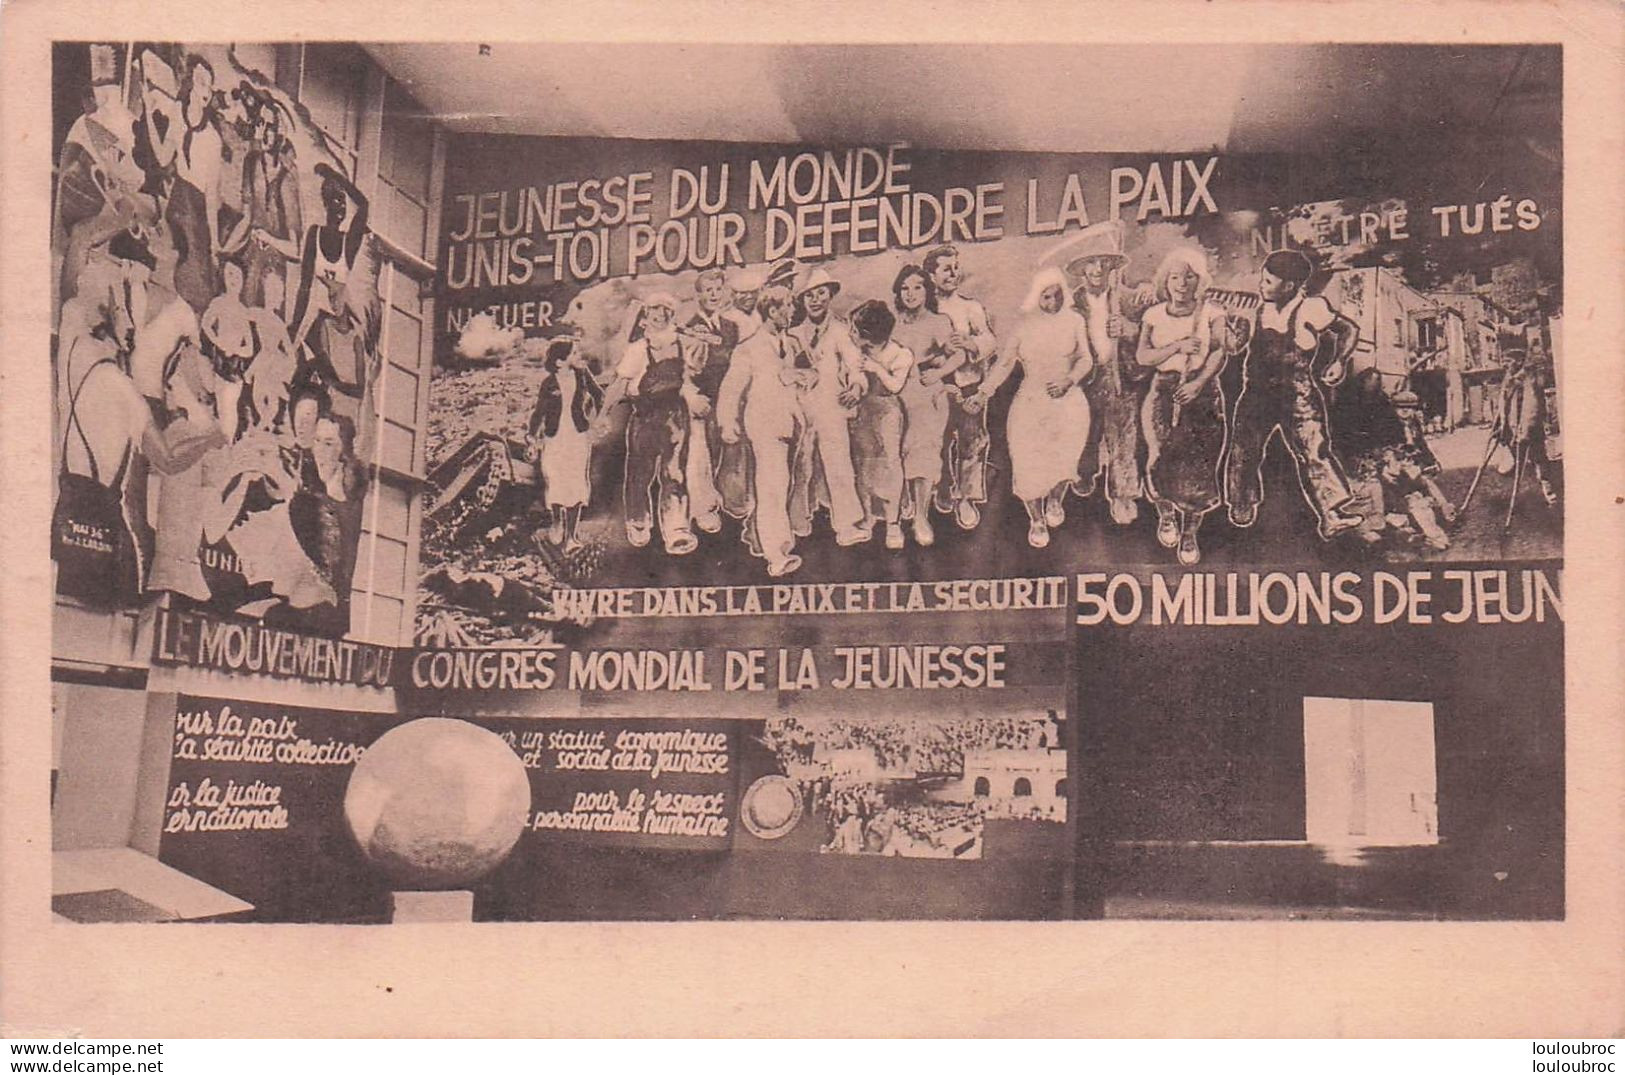 JEUNESSE DU MONDE UNIS TOI POUR DEFENDRE LA PAIX  PARIS 1937 PLACE DU TROCADERO - Events